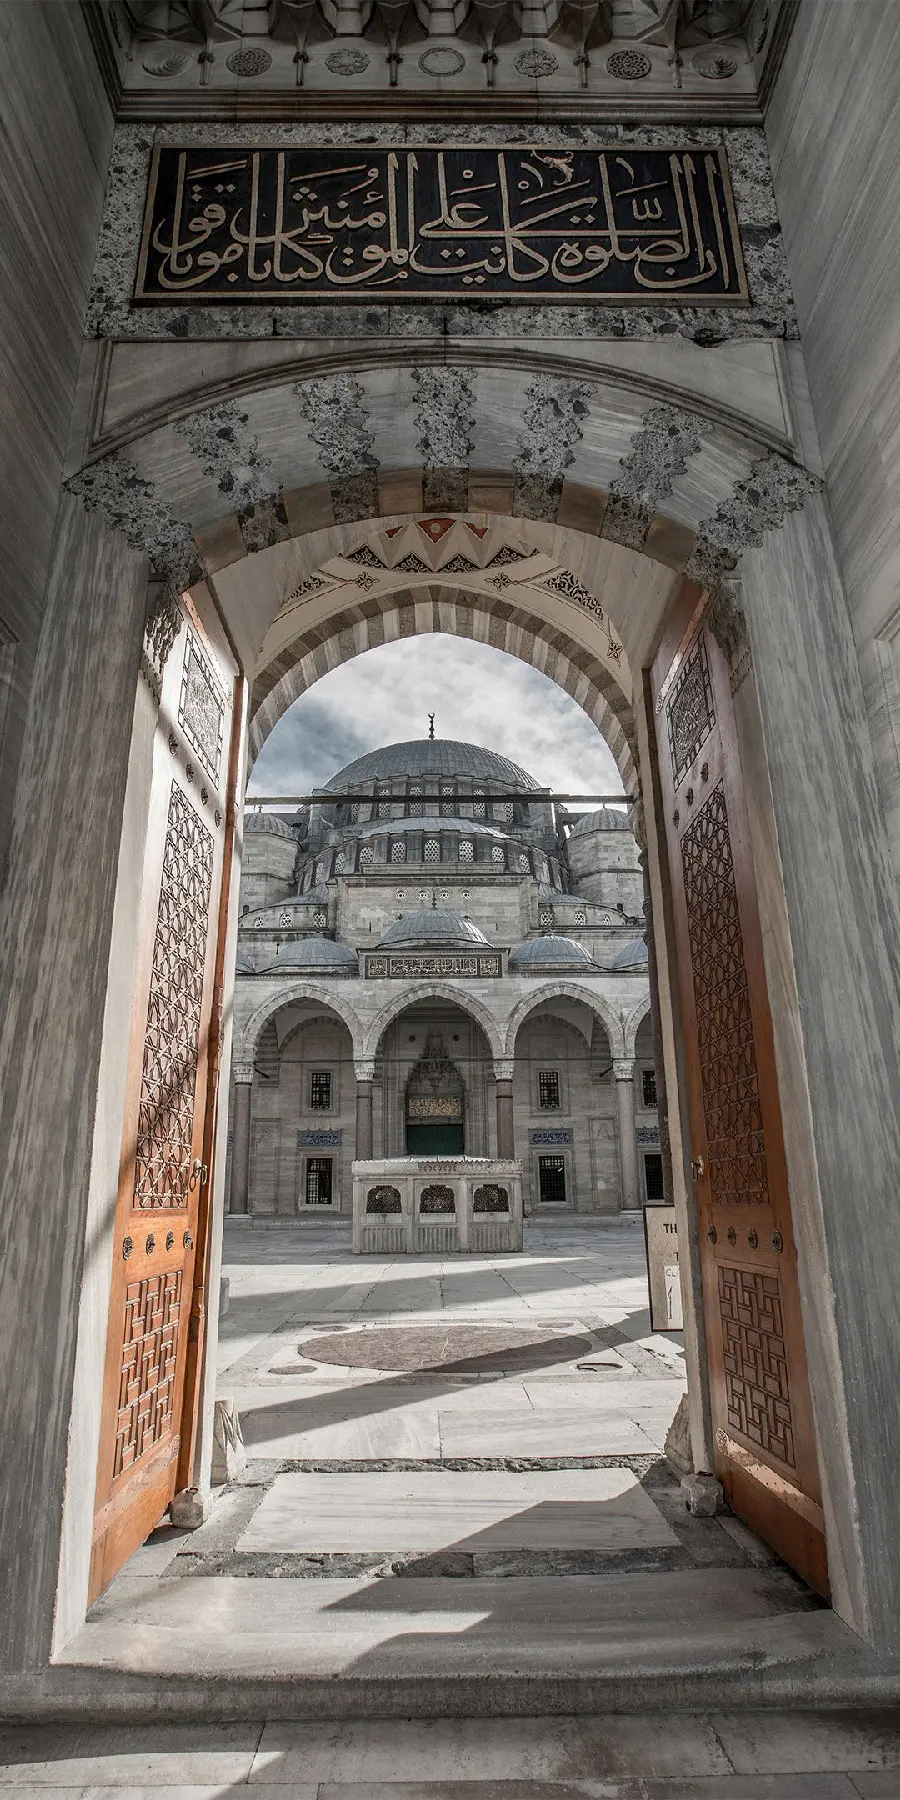 تصویر از درب ورودی یک مکان مذهبی با معماری اسلامی